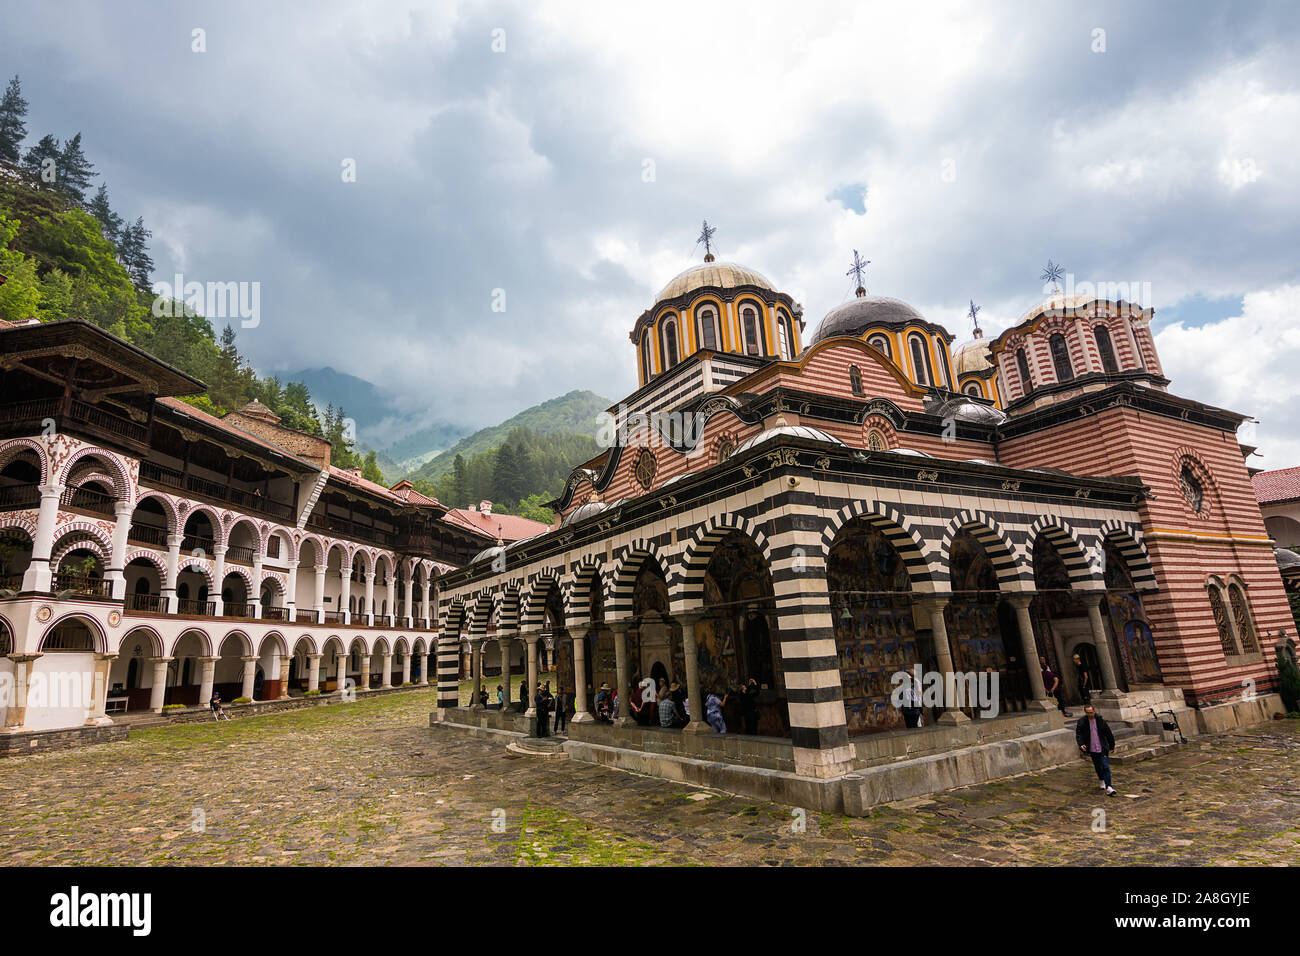 Rila, Bulgaria - Junio 23, 2019: el Monasterio de Rila, uno de los principales destinos turísticos y el sitio de la UNESCO en Bulgaria Foto de stock